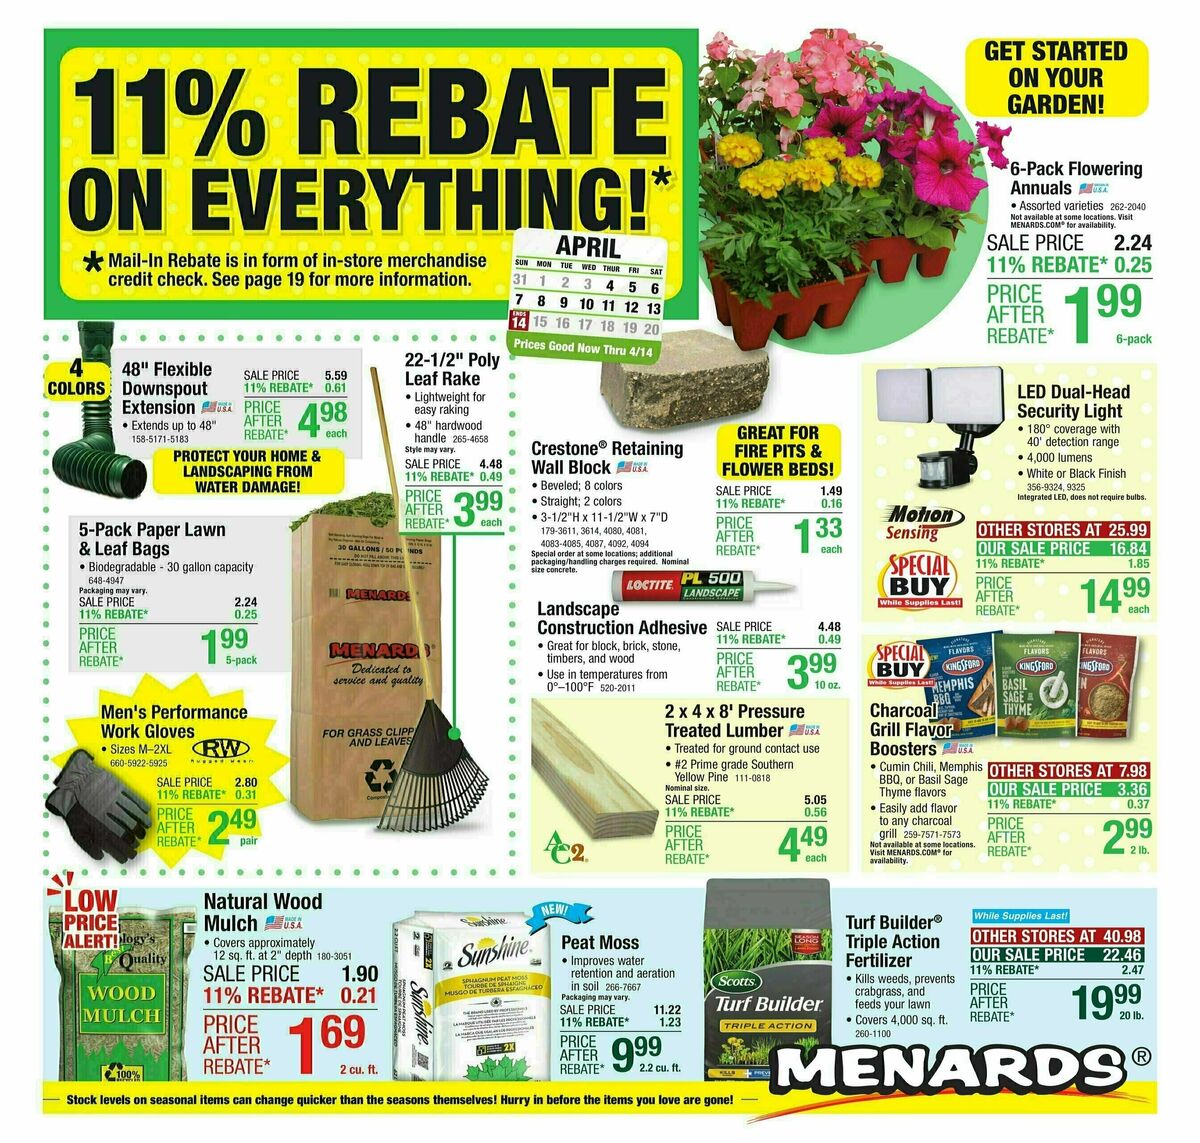 Menards 11% Rebate Sale Weekly Ad from April 3